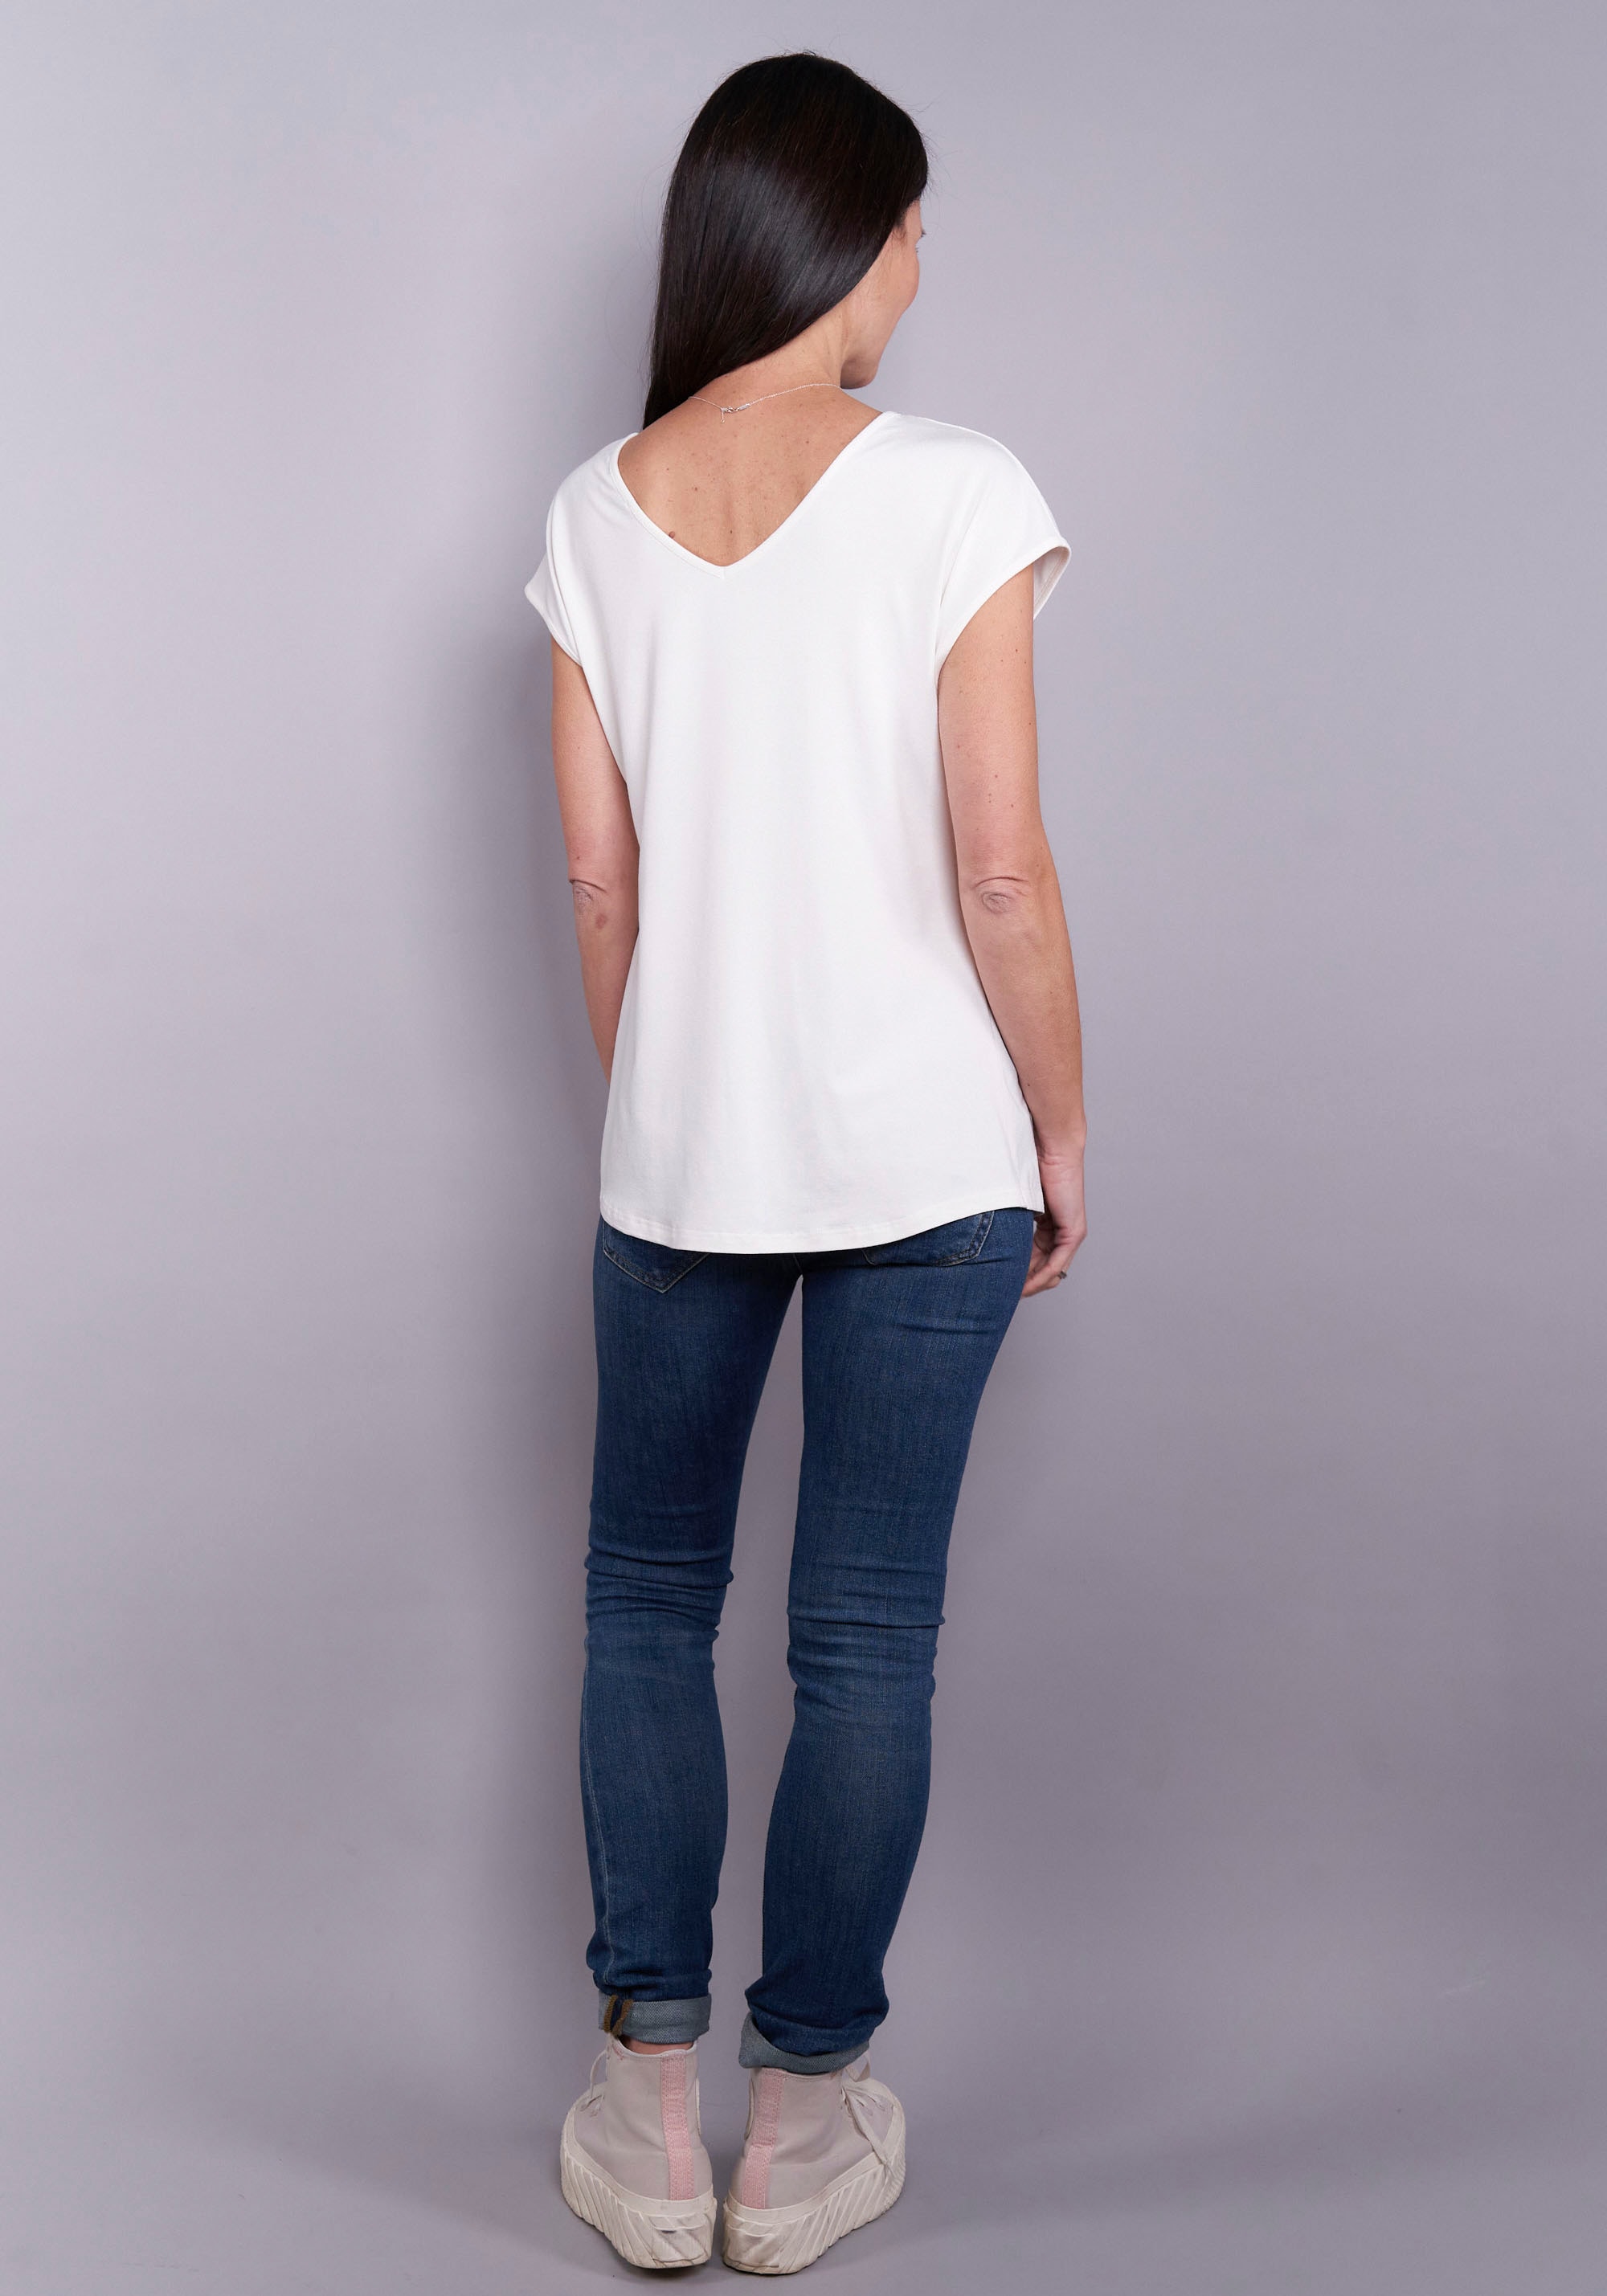 Seidel Moden T-Shirt, tragbar mit V- oder rundem Ausschnitt vorne,  2-in-1-Shirt, Made in Germany